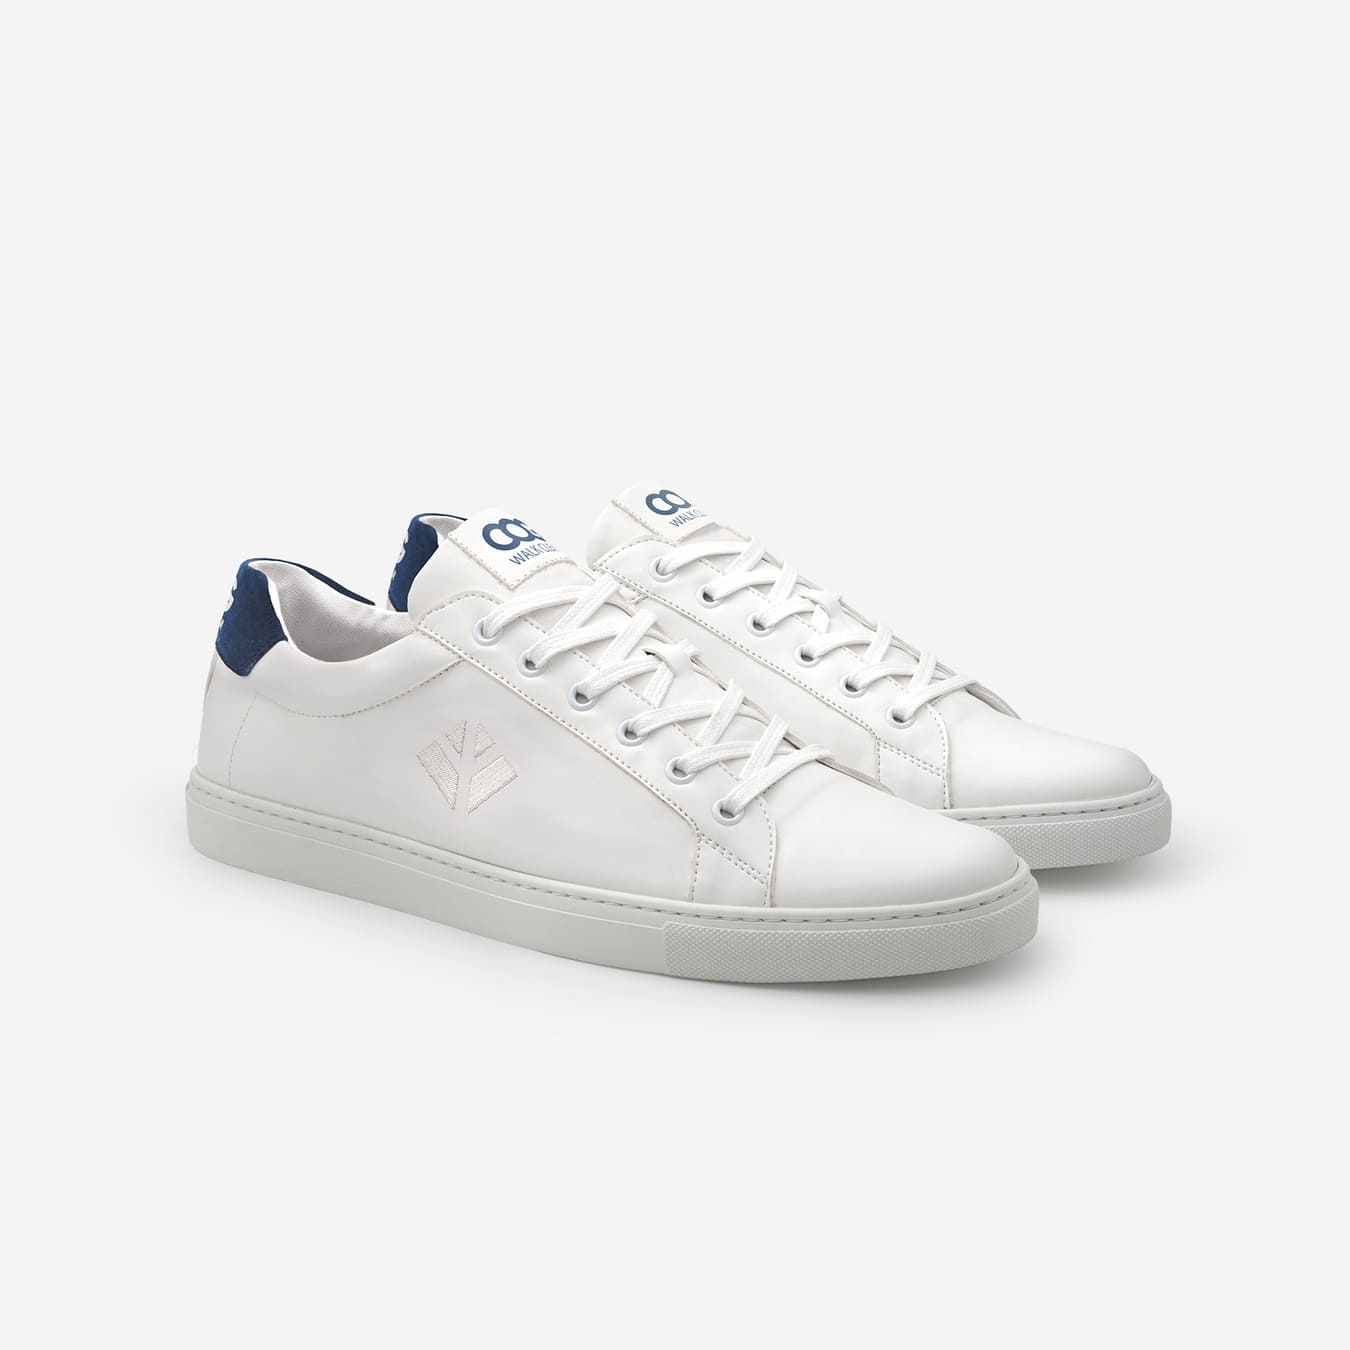 Sneakers baskets basses végan et écologique blanc bleu - Winton Cog